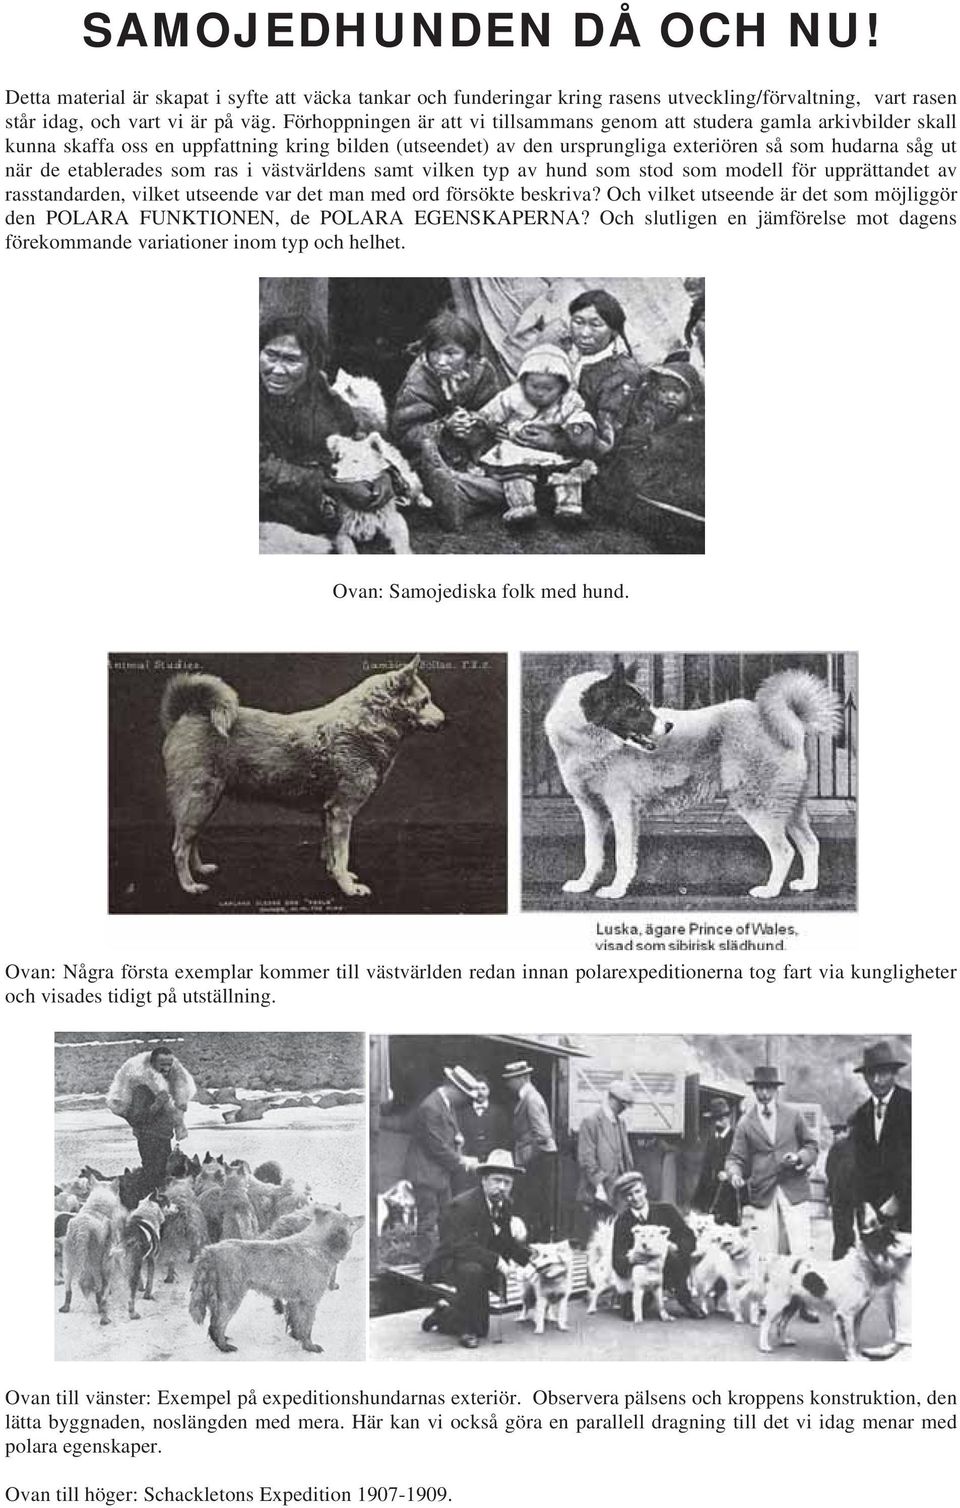 etablerades som ras i västvärldens samt vilken typ av hund som stod som modell för upprättandet av rasstandarden, vilket utseende var det man med ord försökte beskriva?